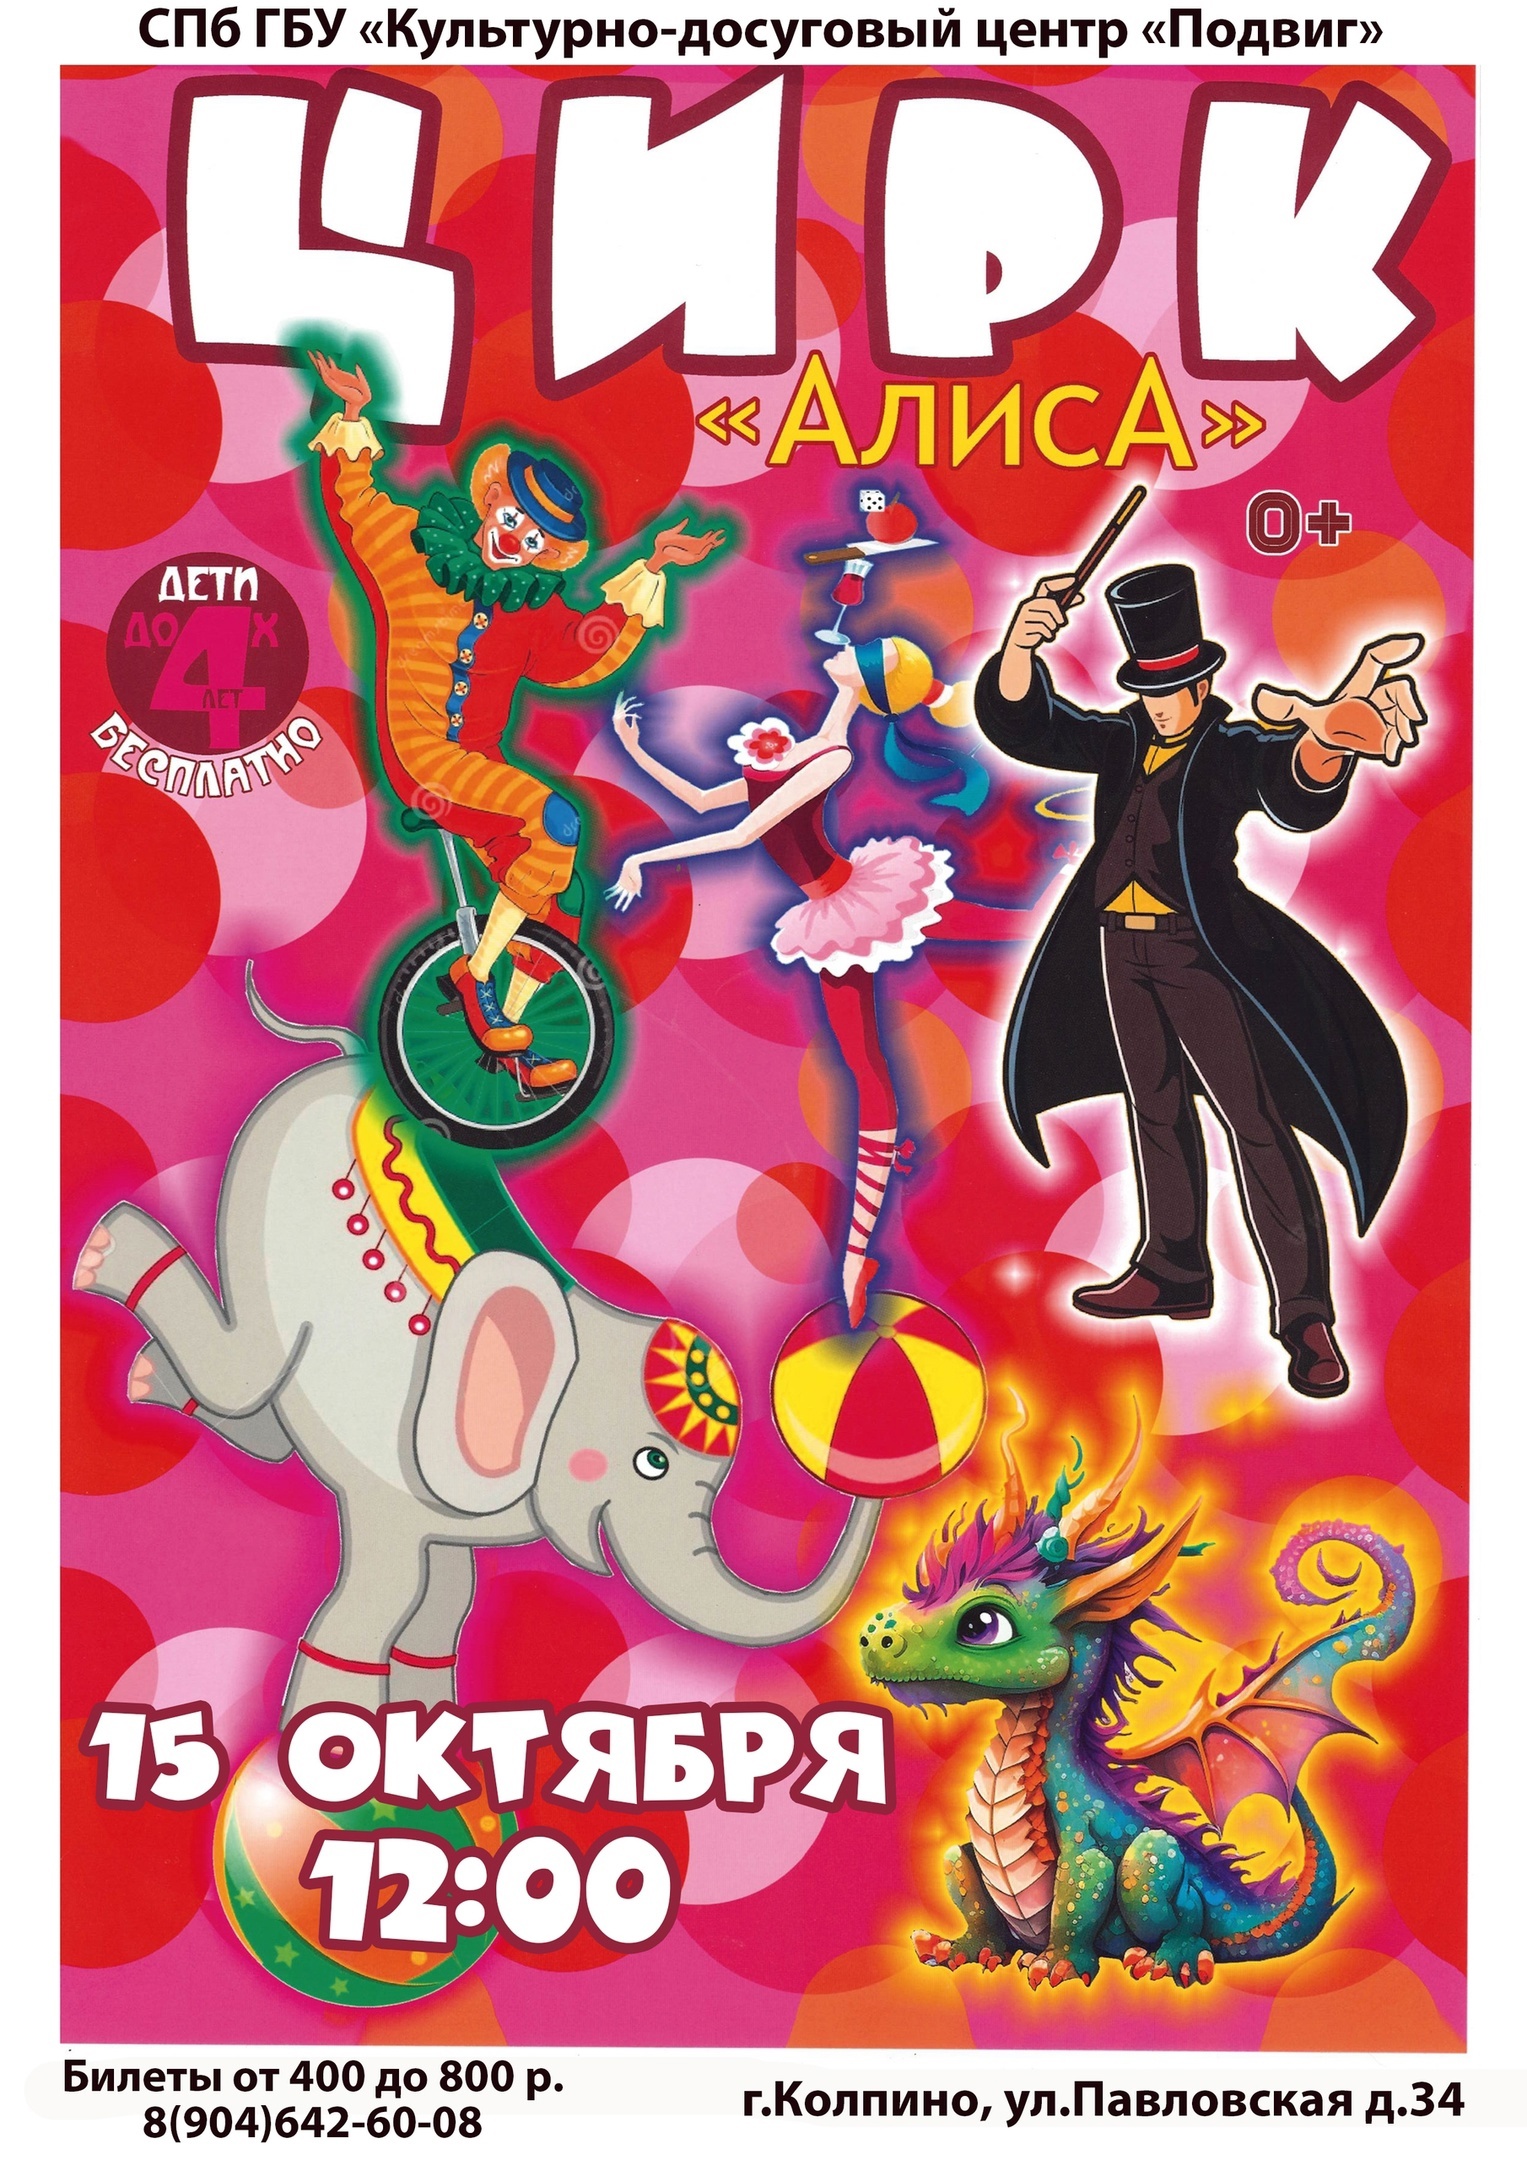 15 октября в 12:00 на сцене КДЦ "Подвиг" со сказочным шоу "Созвездие" выступят артисты цирка "Алиса" (0+).